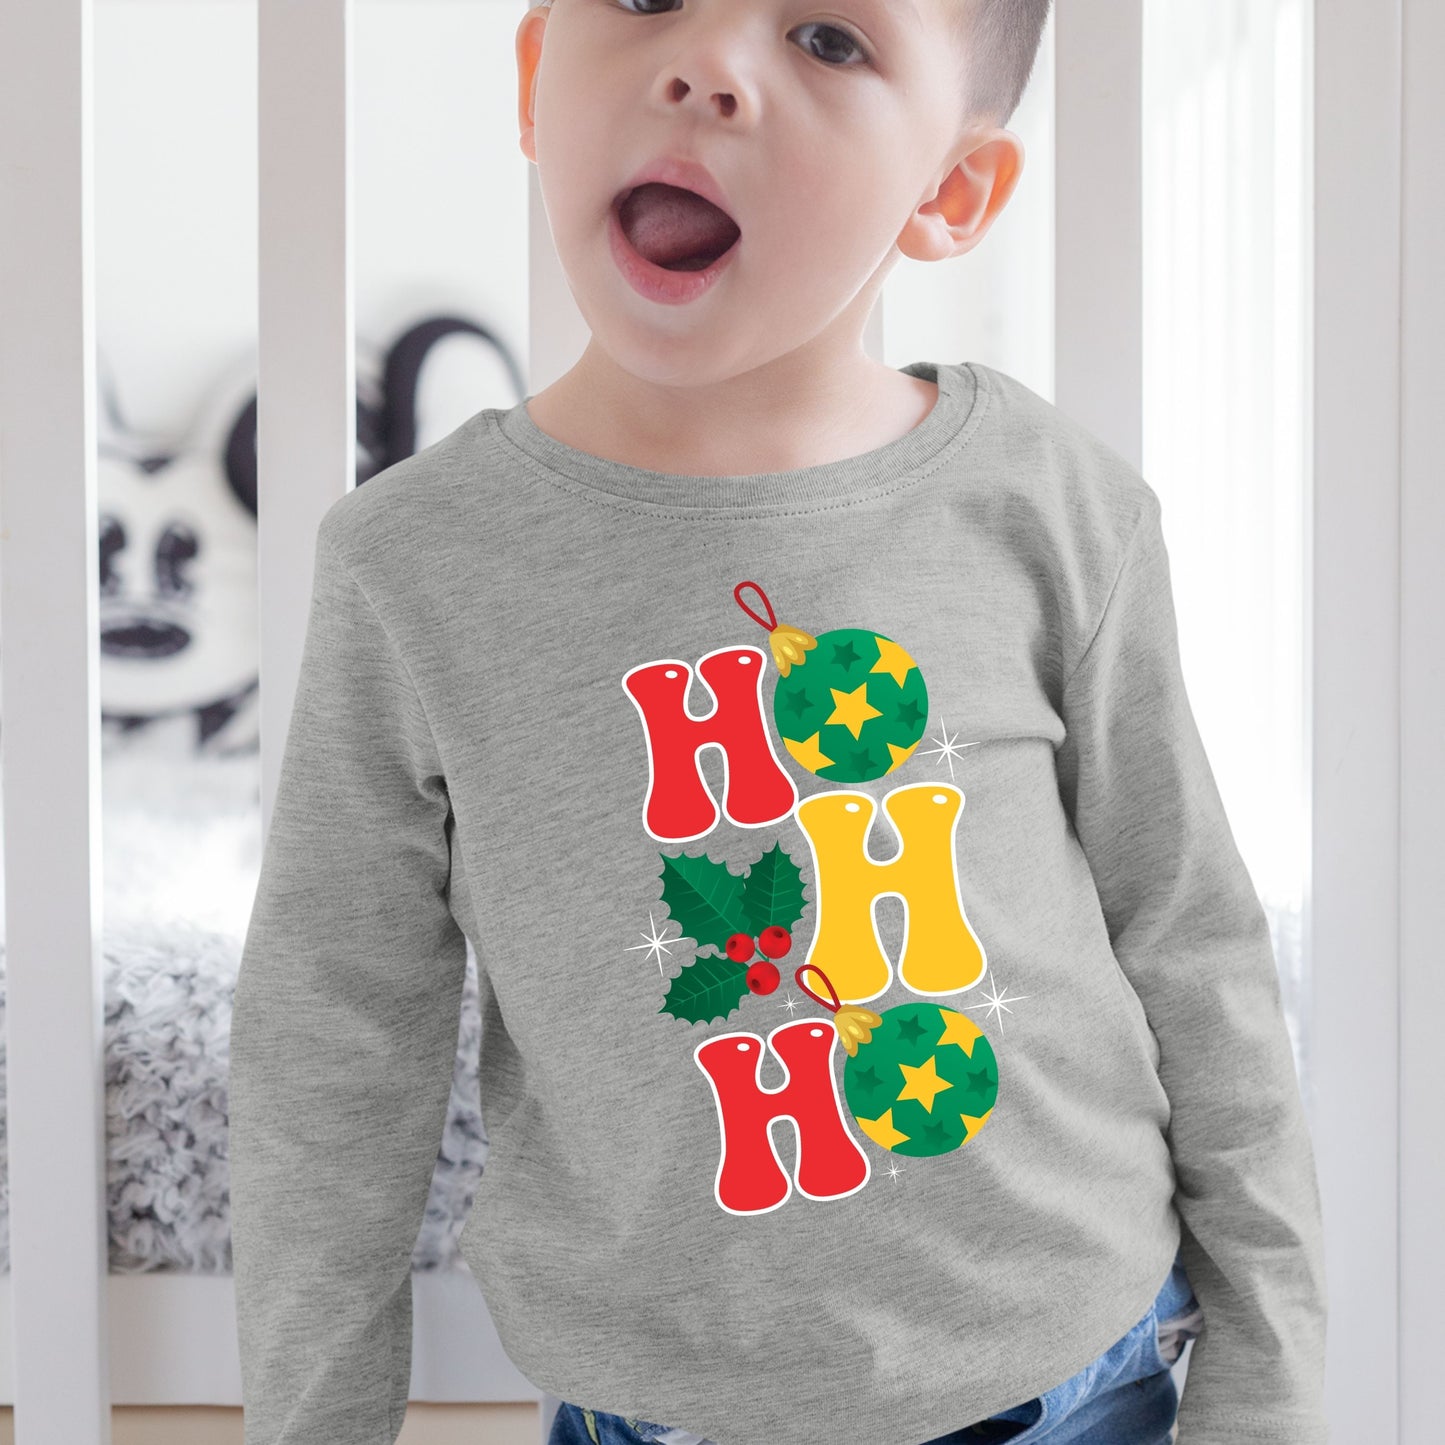 Ho Ho Ho, Christmas Sweatshirt, Christmas Long Sleeves, Christmas Sweater, Christmas Crewneck For Toddler, Christmas Present